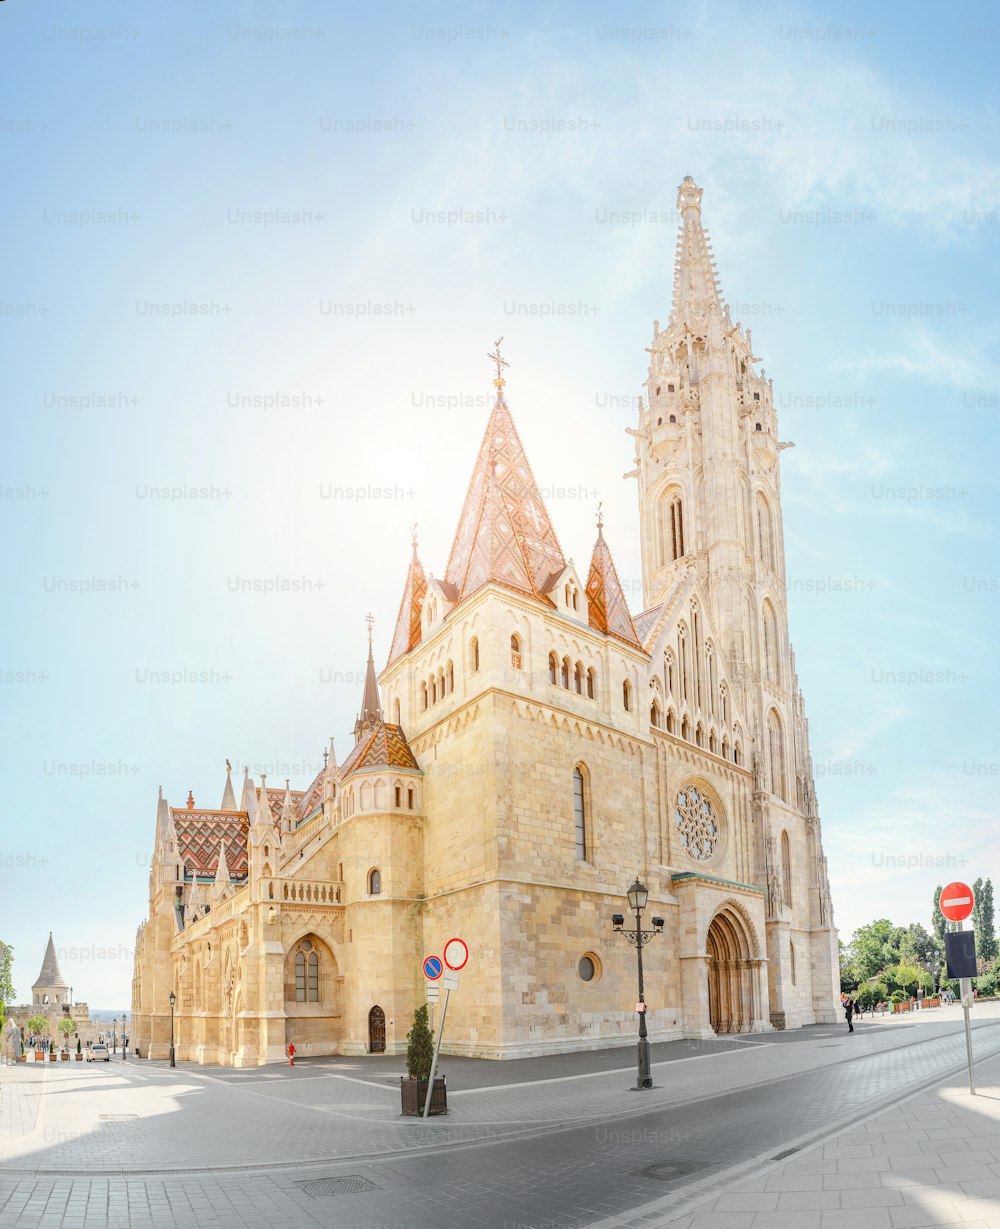 Principale attraction touristique et point de repère de Budapest - l’architecture étonnante de la cathédrale Saint-Matthias. L’église est le plus grand temple gothique de Hongrie.